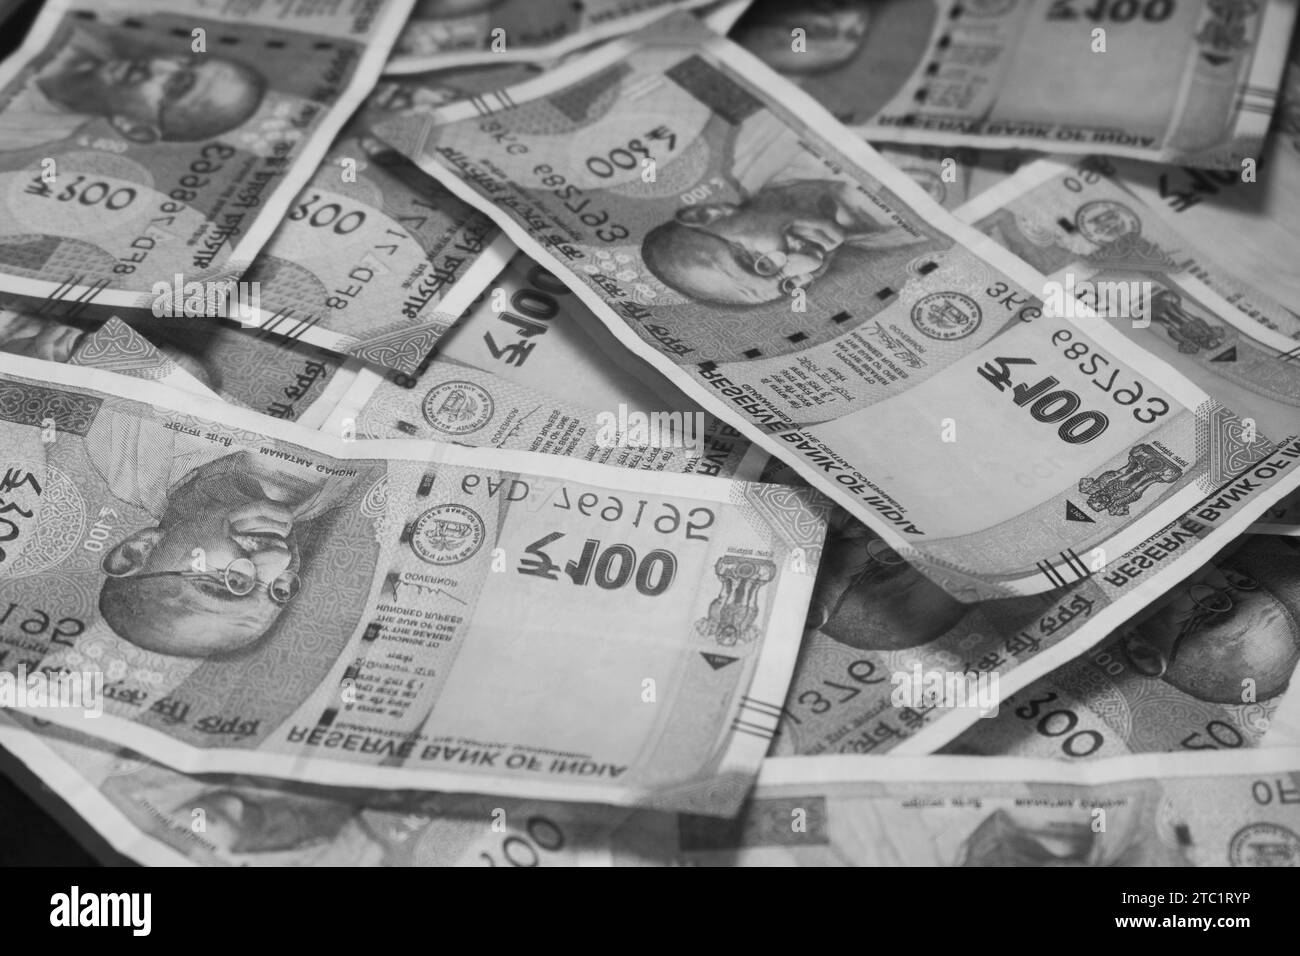 Mahatma Gandhi in cento rupie in valuta indiana. Sfondi monetari e sfondi, trading, monetizzazione, finanza, investimenti e concetti aziendali Foto Stock